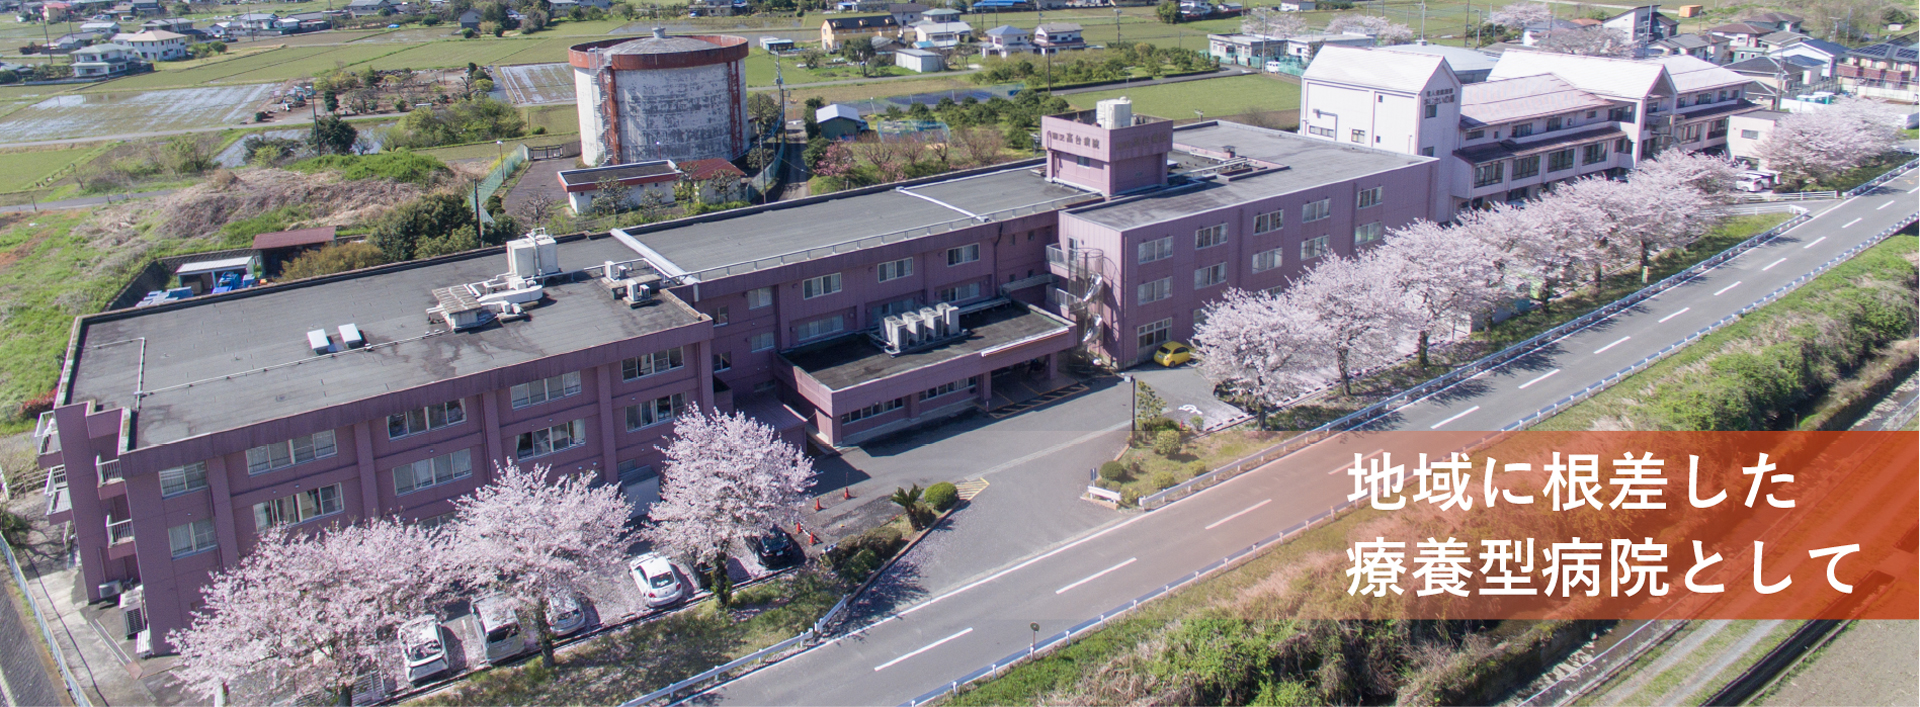 高台病院と桜